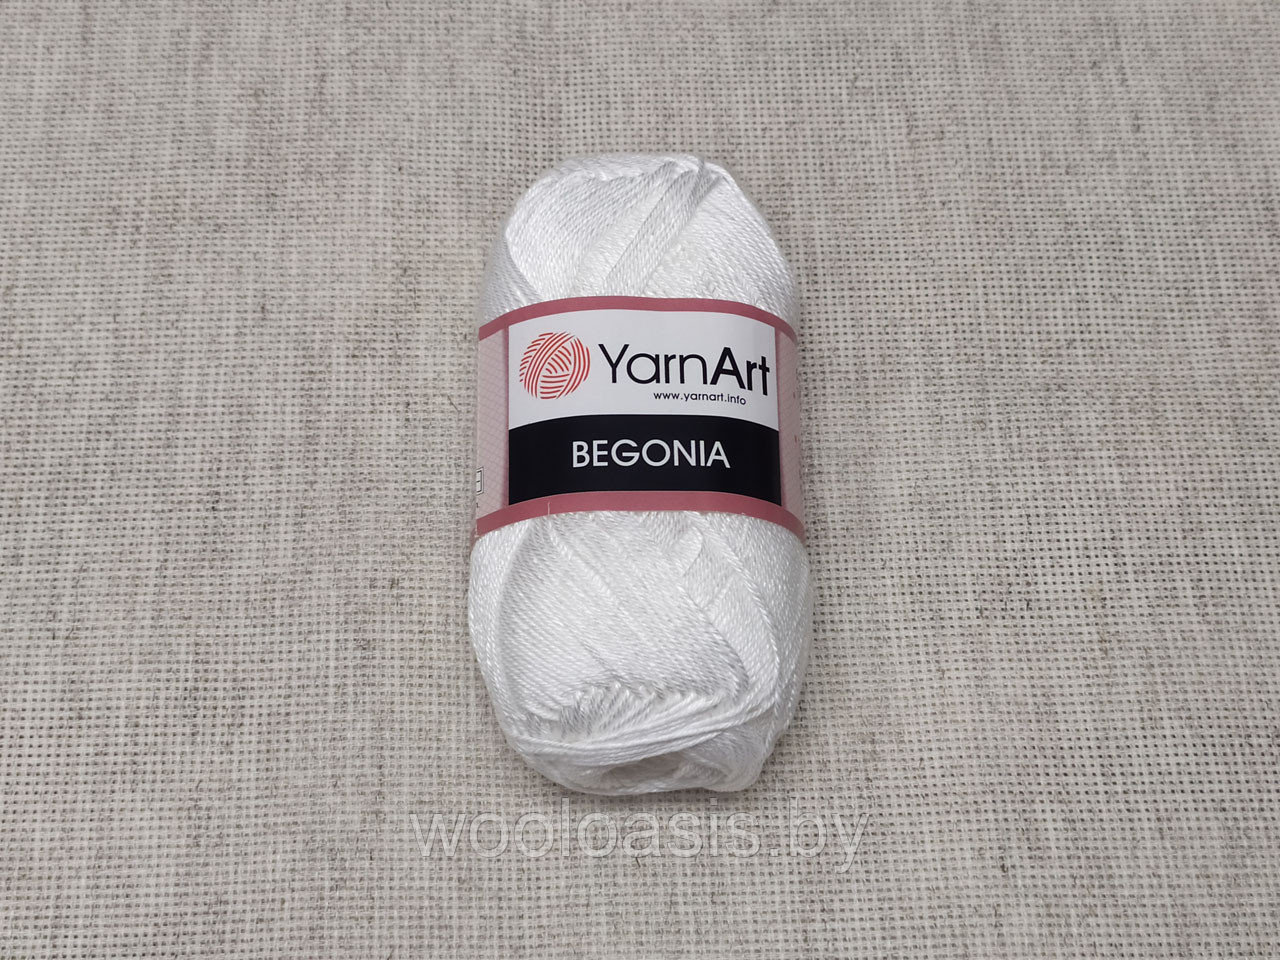 Пряжа YarnArt Begonia, Ярнарт Бегония, турецкая, 100% хлопок, летняя, для ручного вязания (цвет 1000)